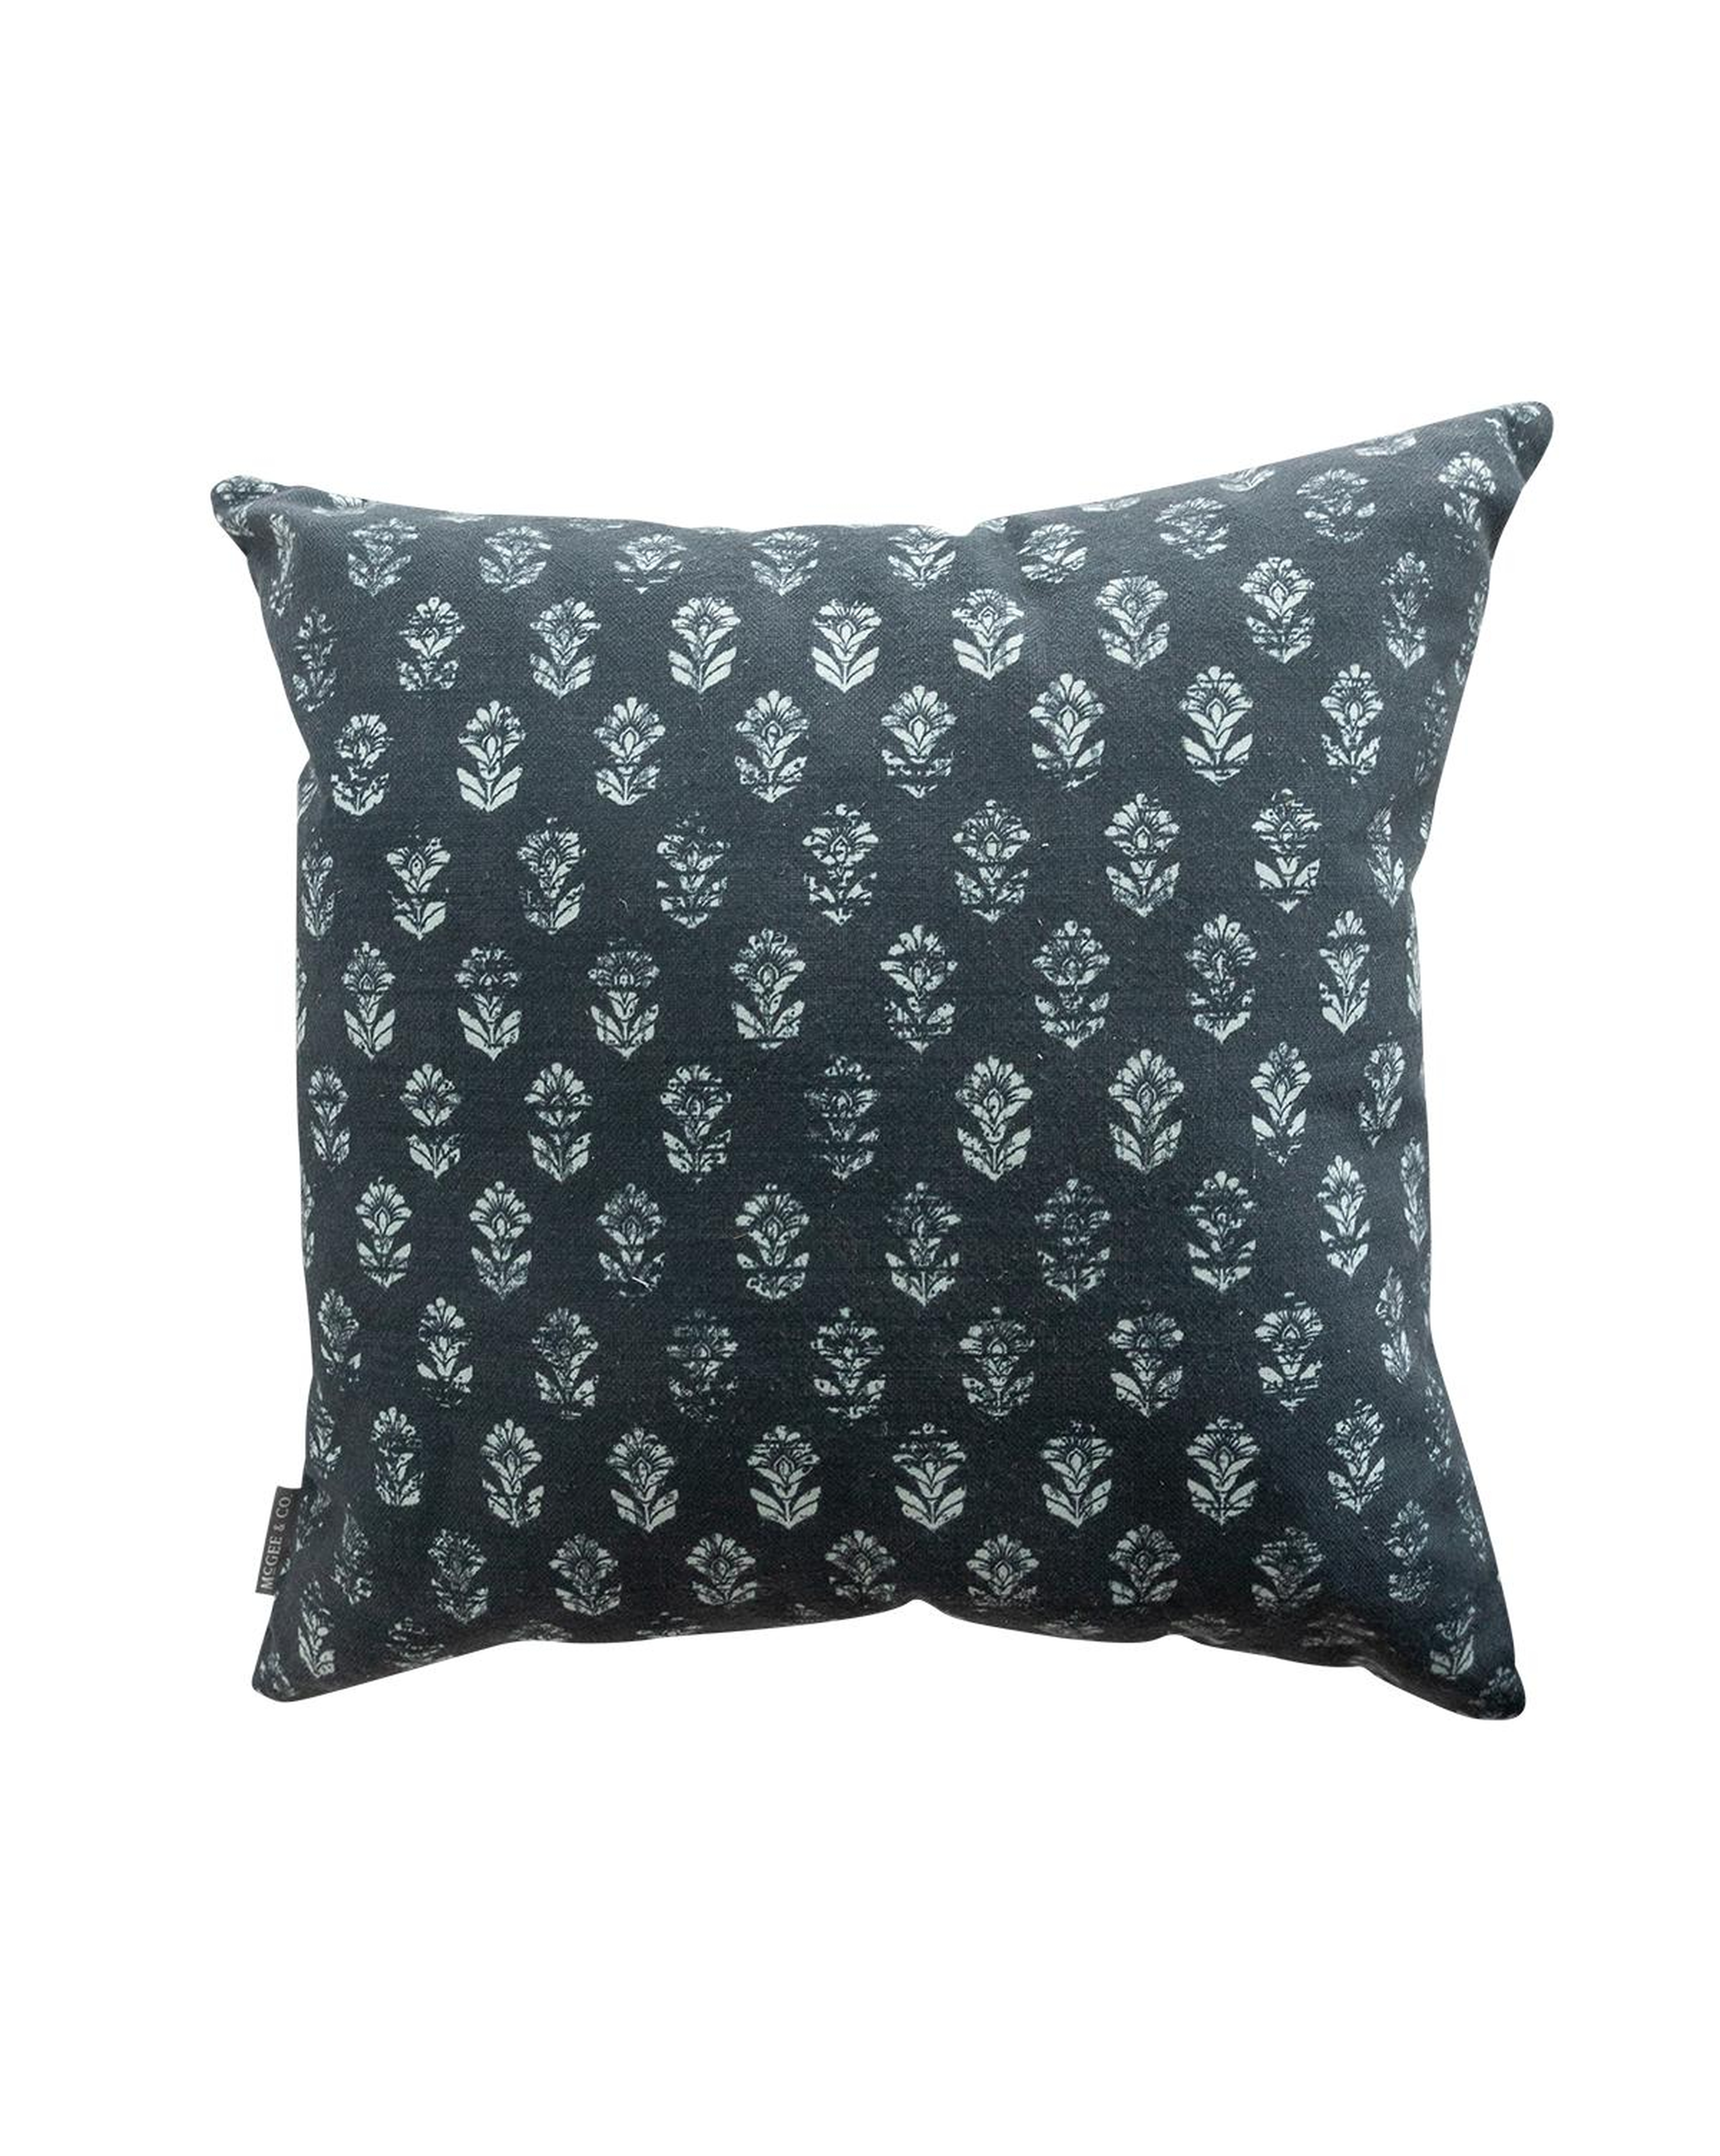 Amara Outdoor Pillow, 22" x 22" - McGee & Co.